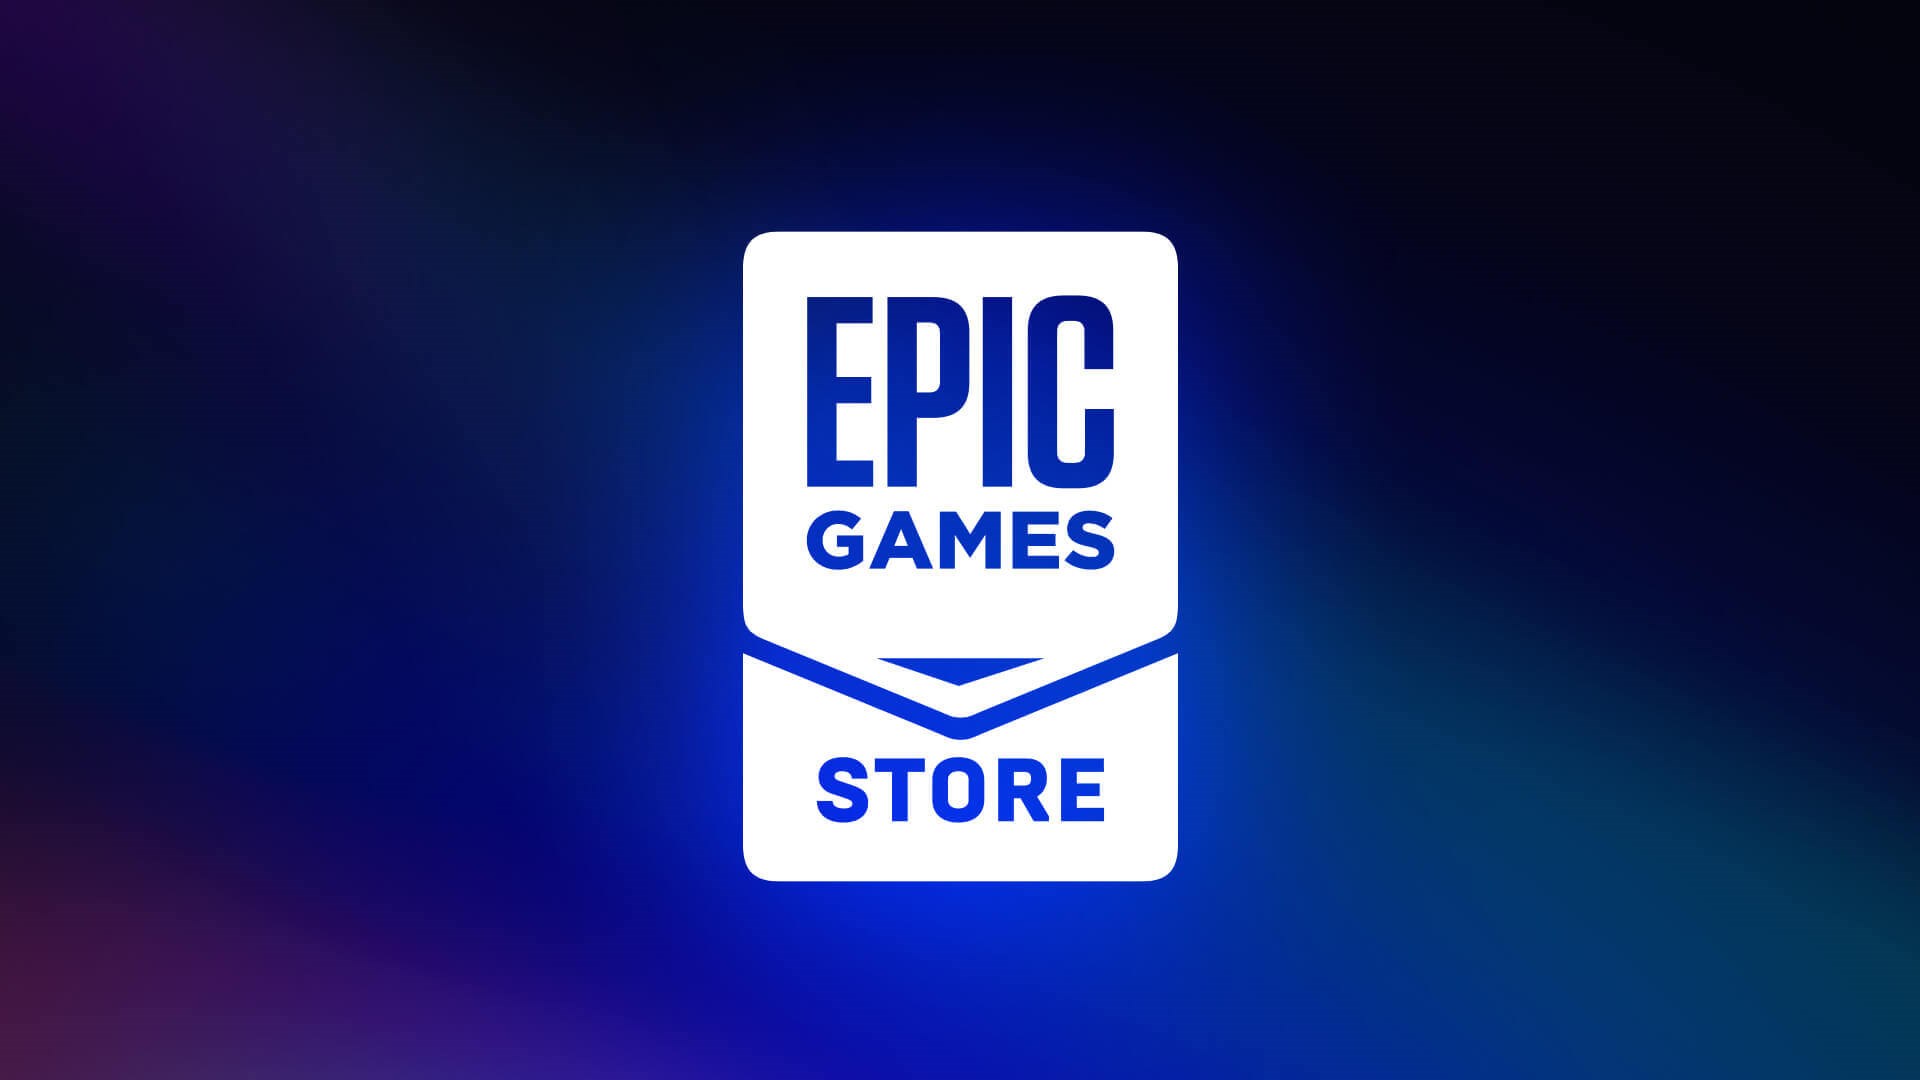 Epic Games’in bu haftaki ücretsiz oyunları belli oldu